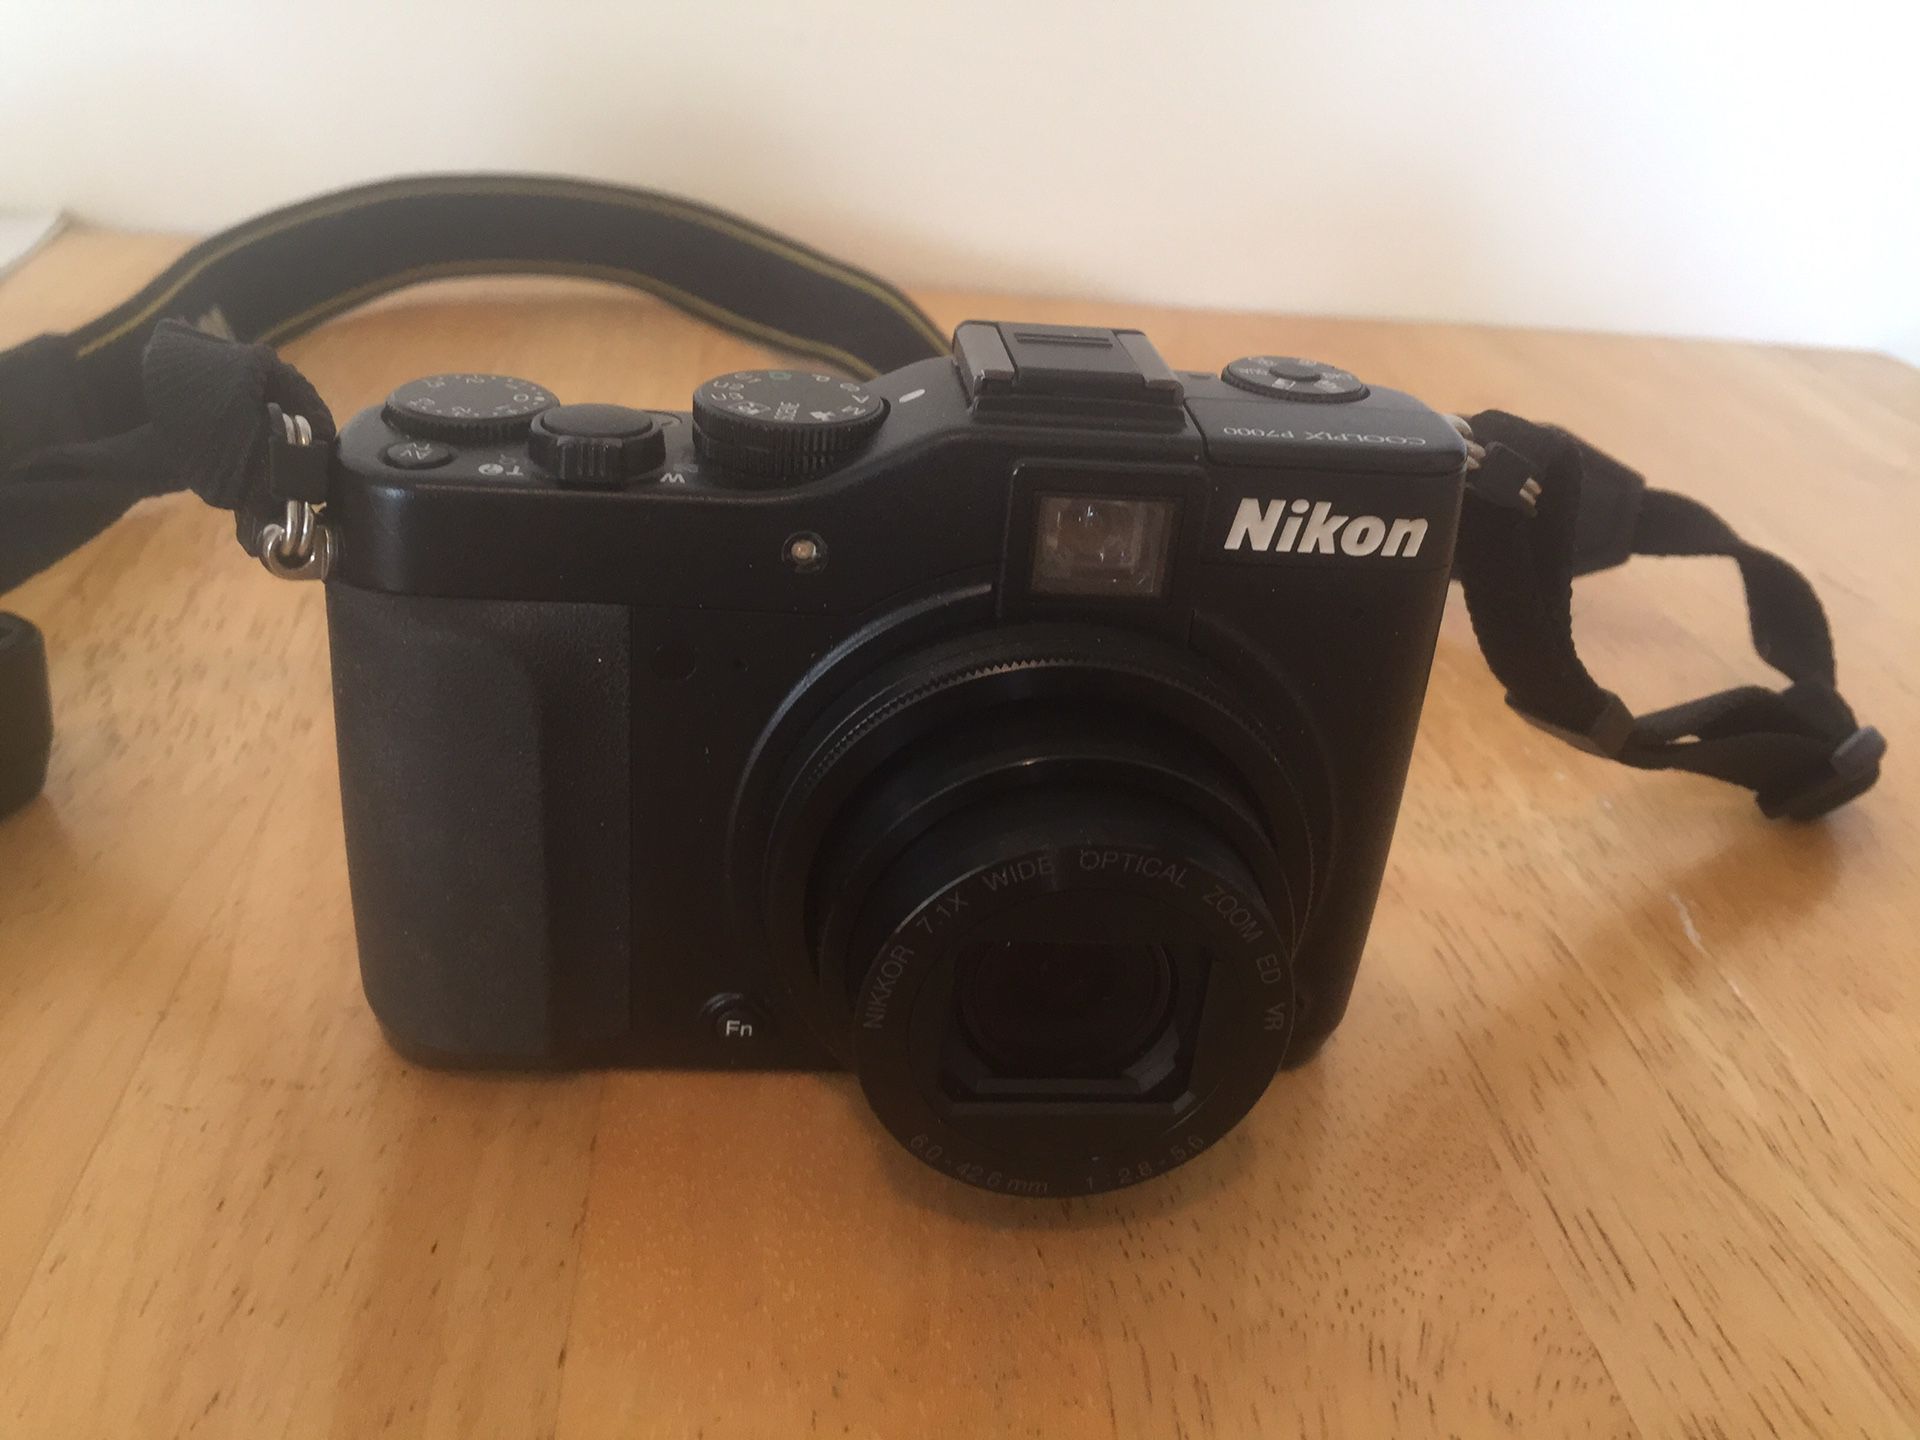 Nikon Cool Pix P7000 16.0 megapixel digital camera